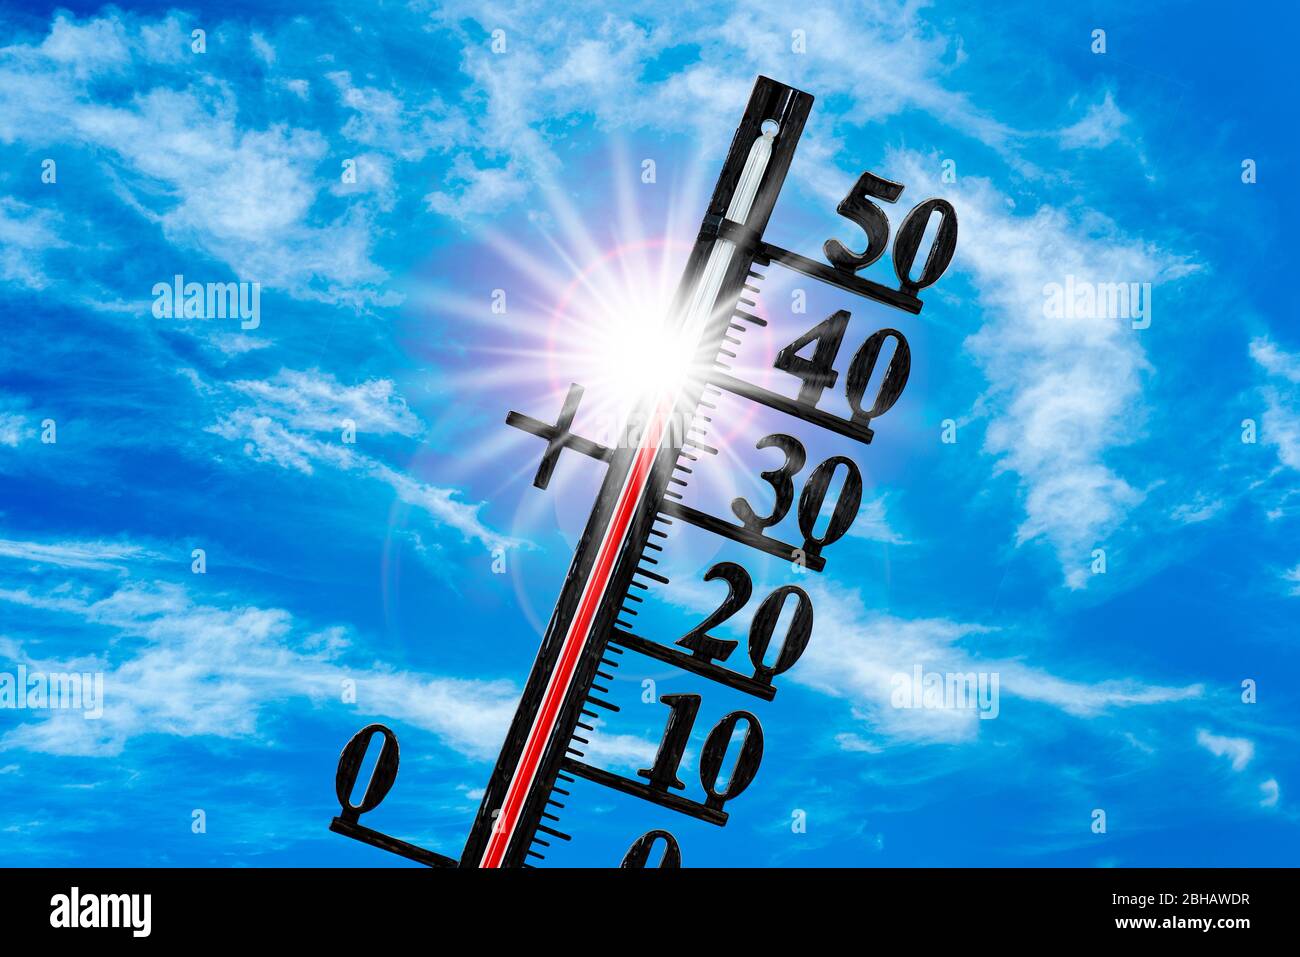 El termómetro muestra 40 grados en la onda de calor Foto de stock